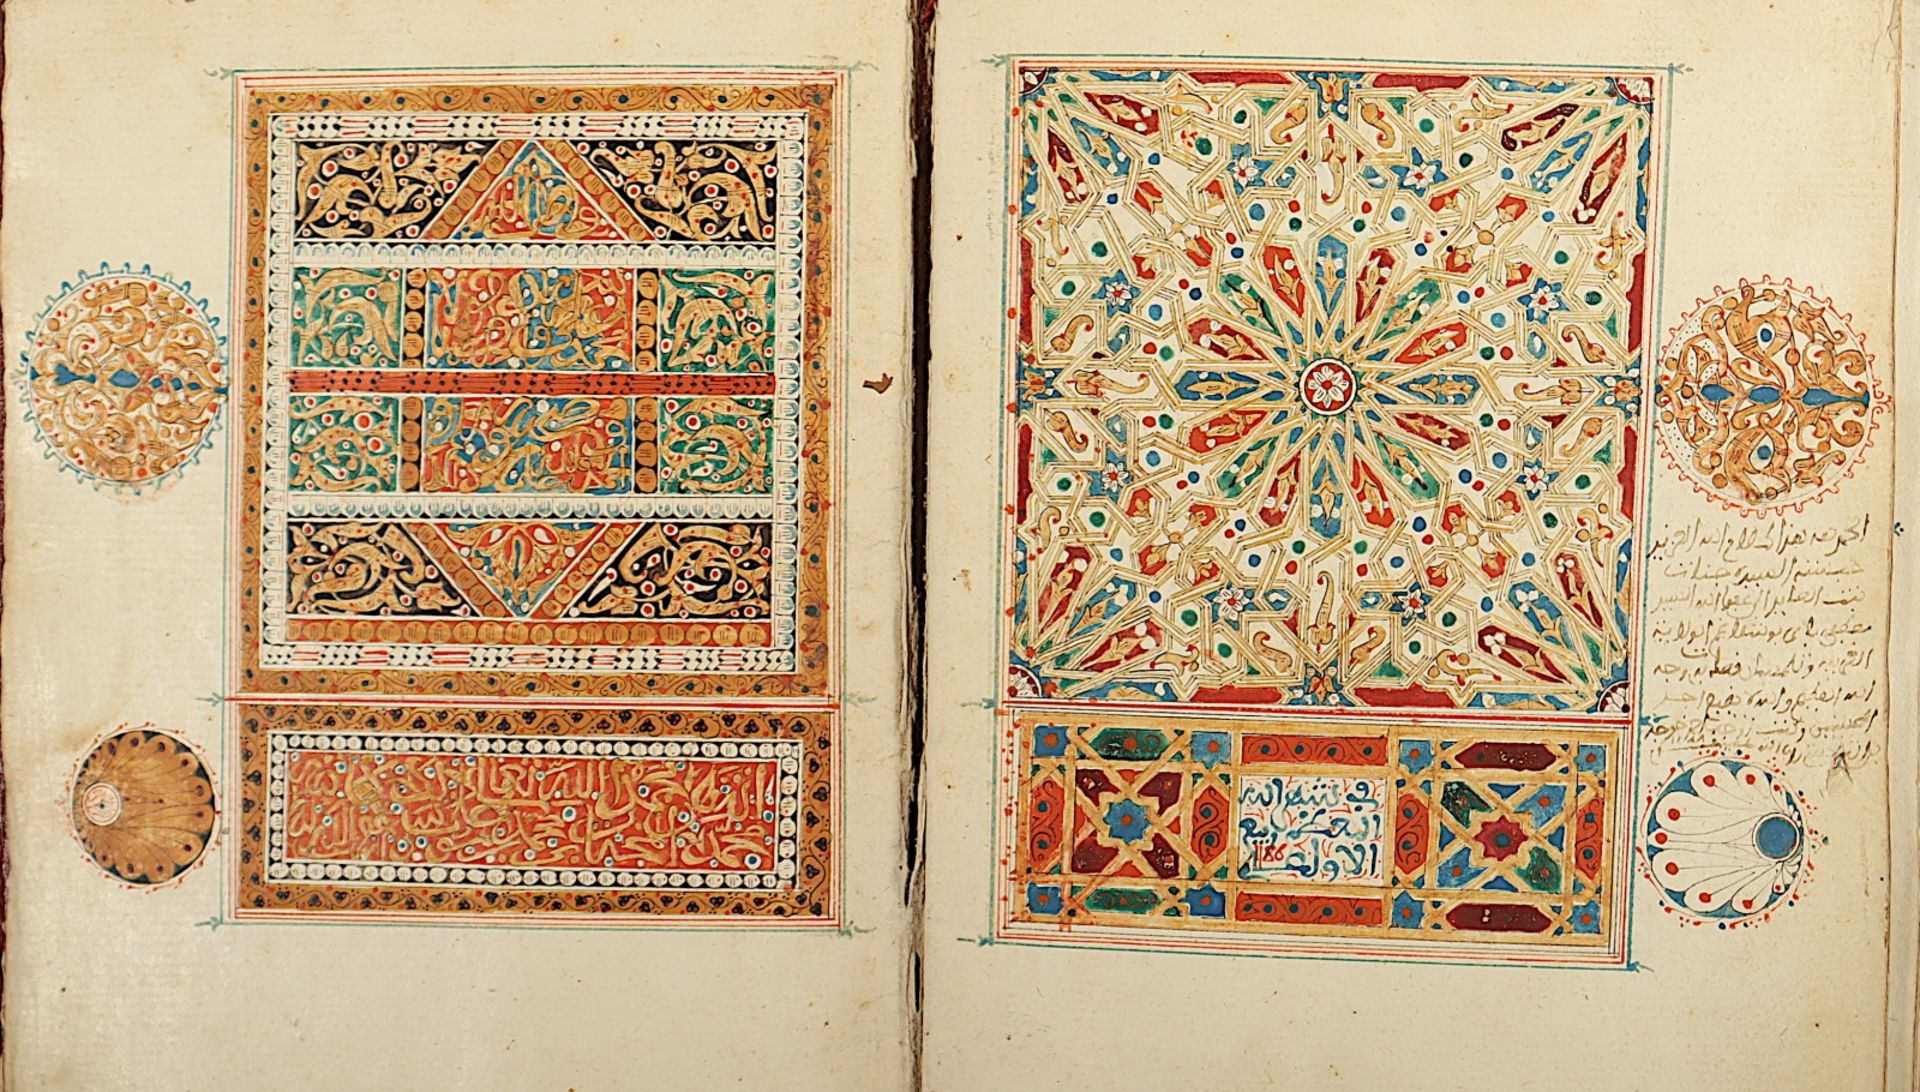 SELTENER KORAN, (QUR'AN) farbige Malerei auf Papier, arabische Handschrift, 18.Jh. - Bild 10 aus 14